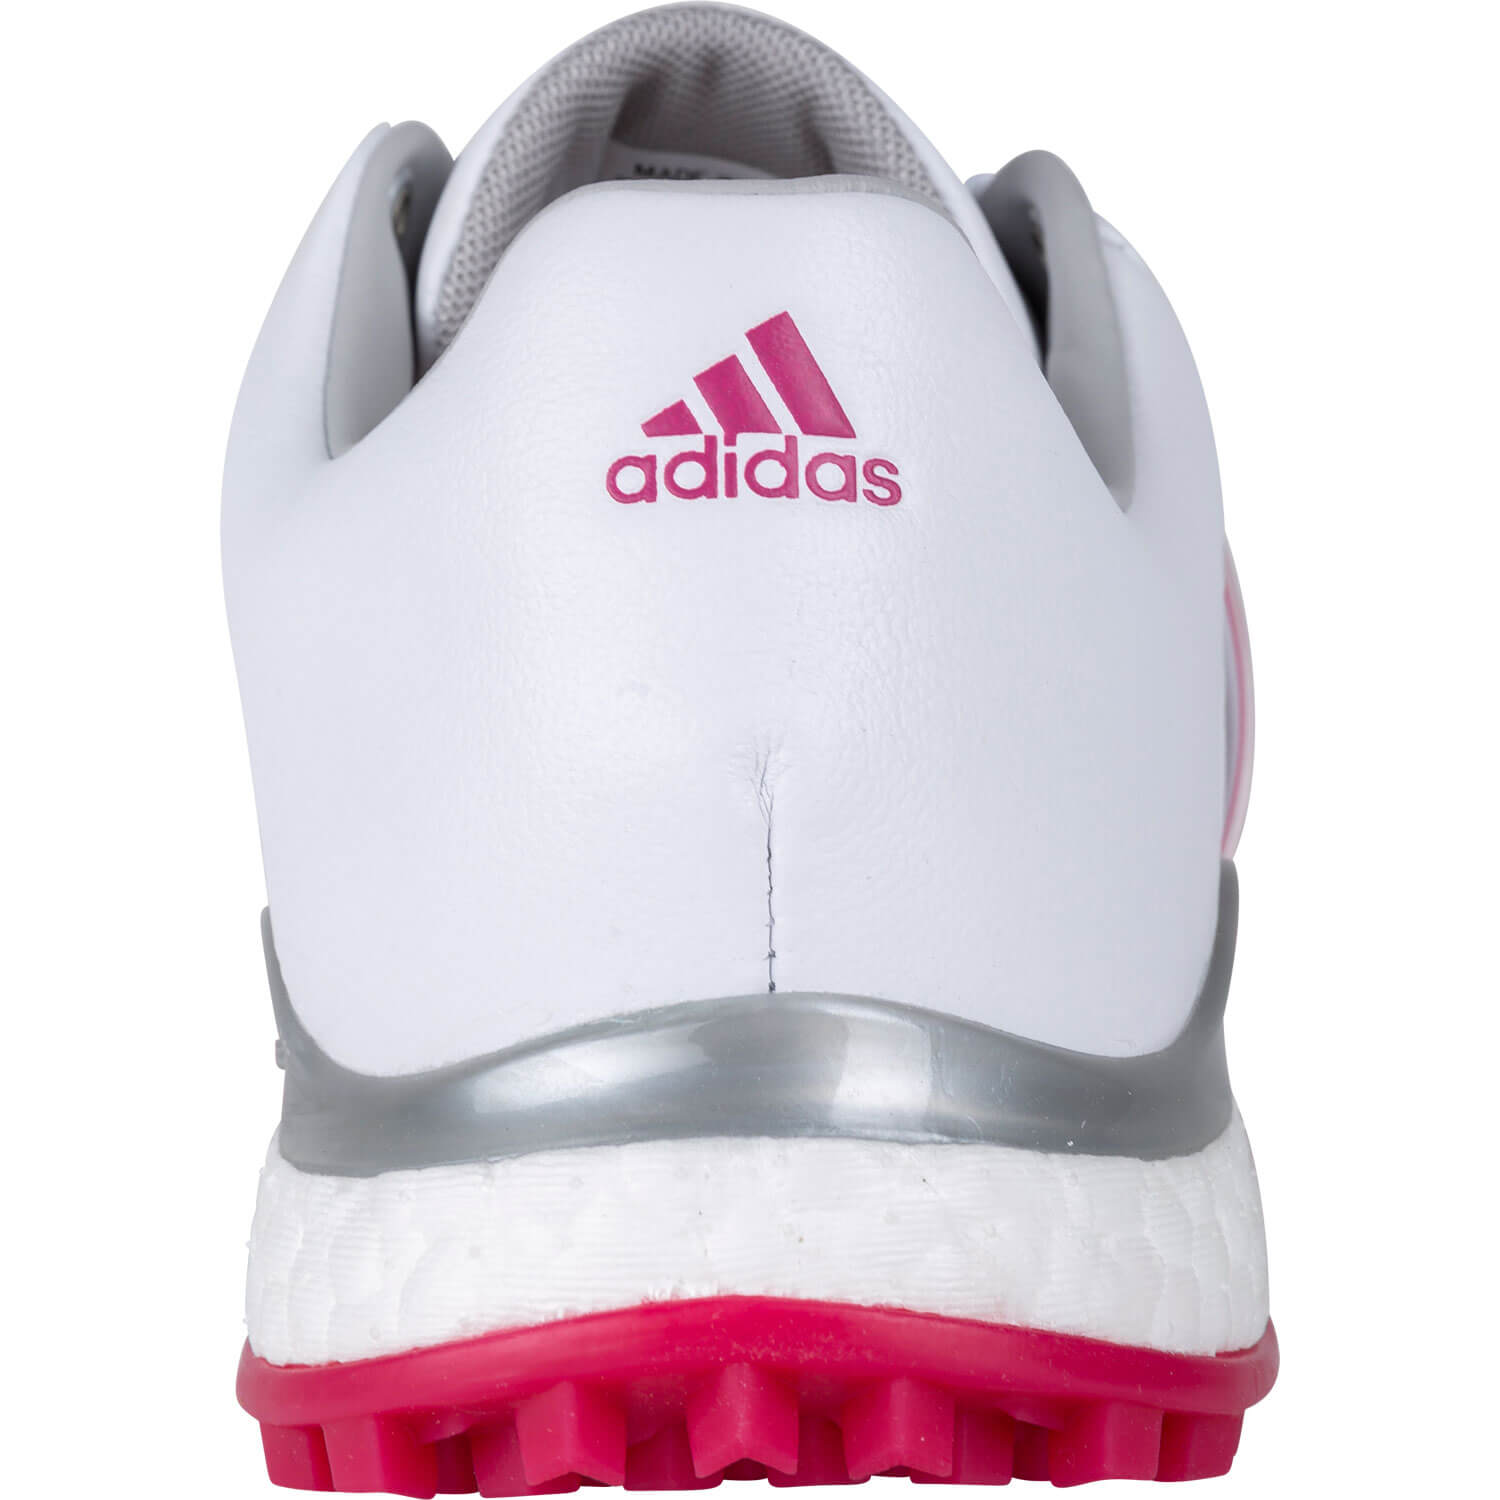 Adidas Tour360 XT-SL White/Red Damen